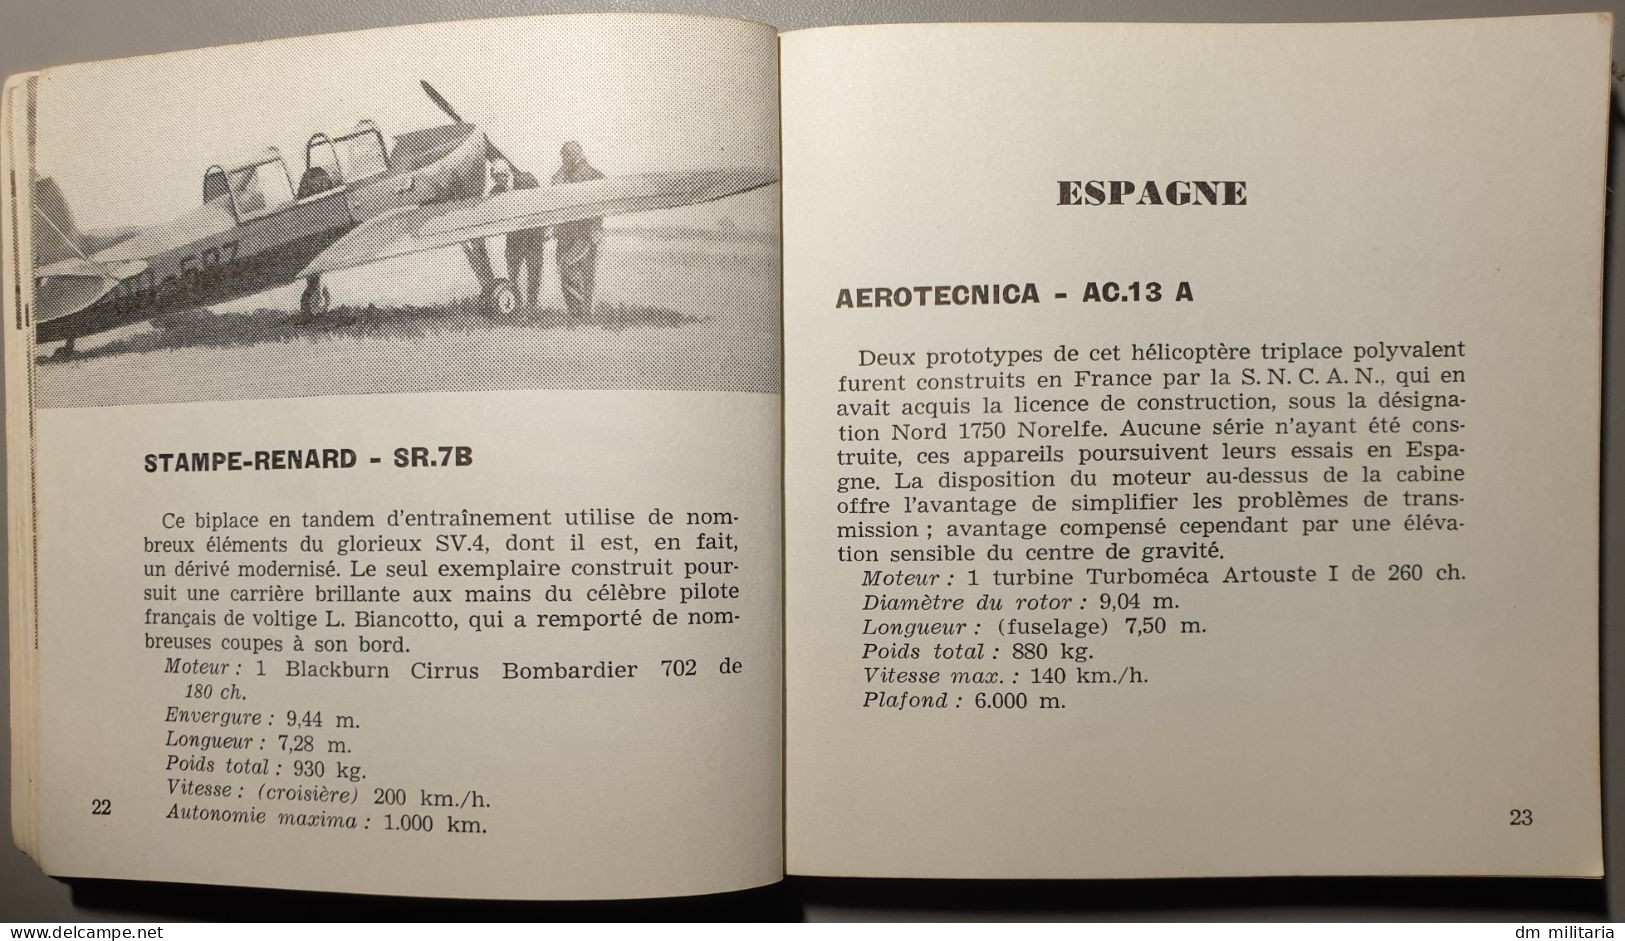 LES AVIONS EUROPÉENS - PIERRE SPARACO - MARABOUT FLASH - 1959 - Avion